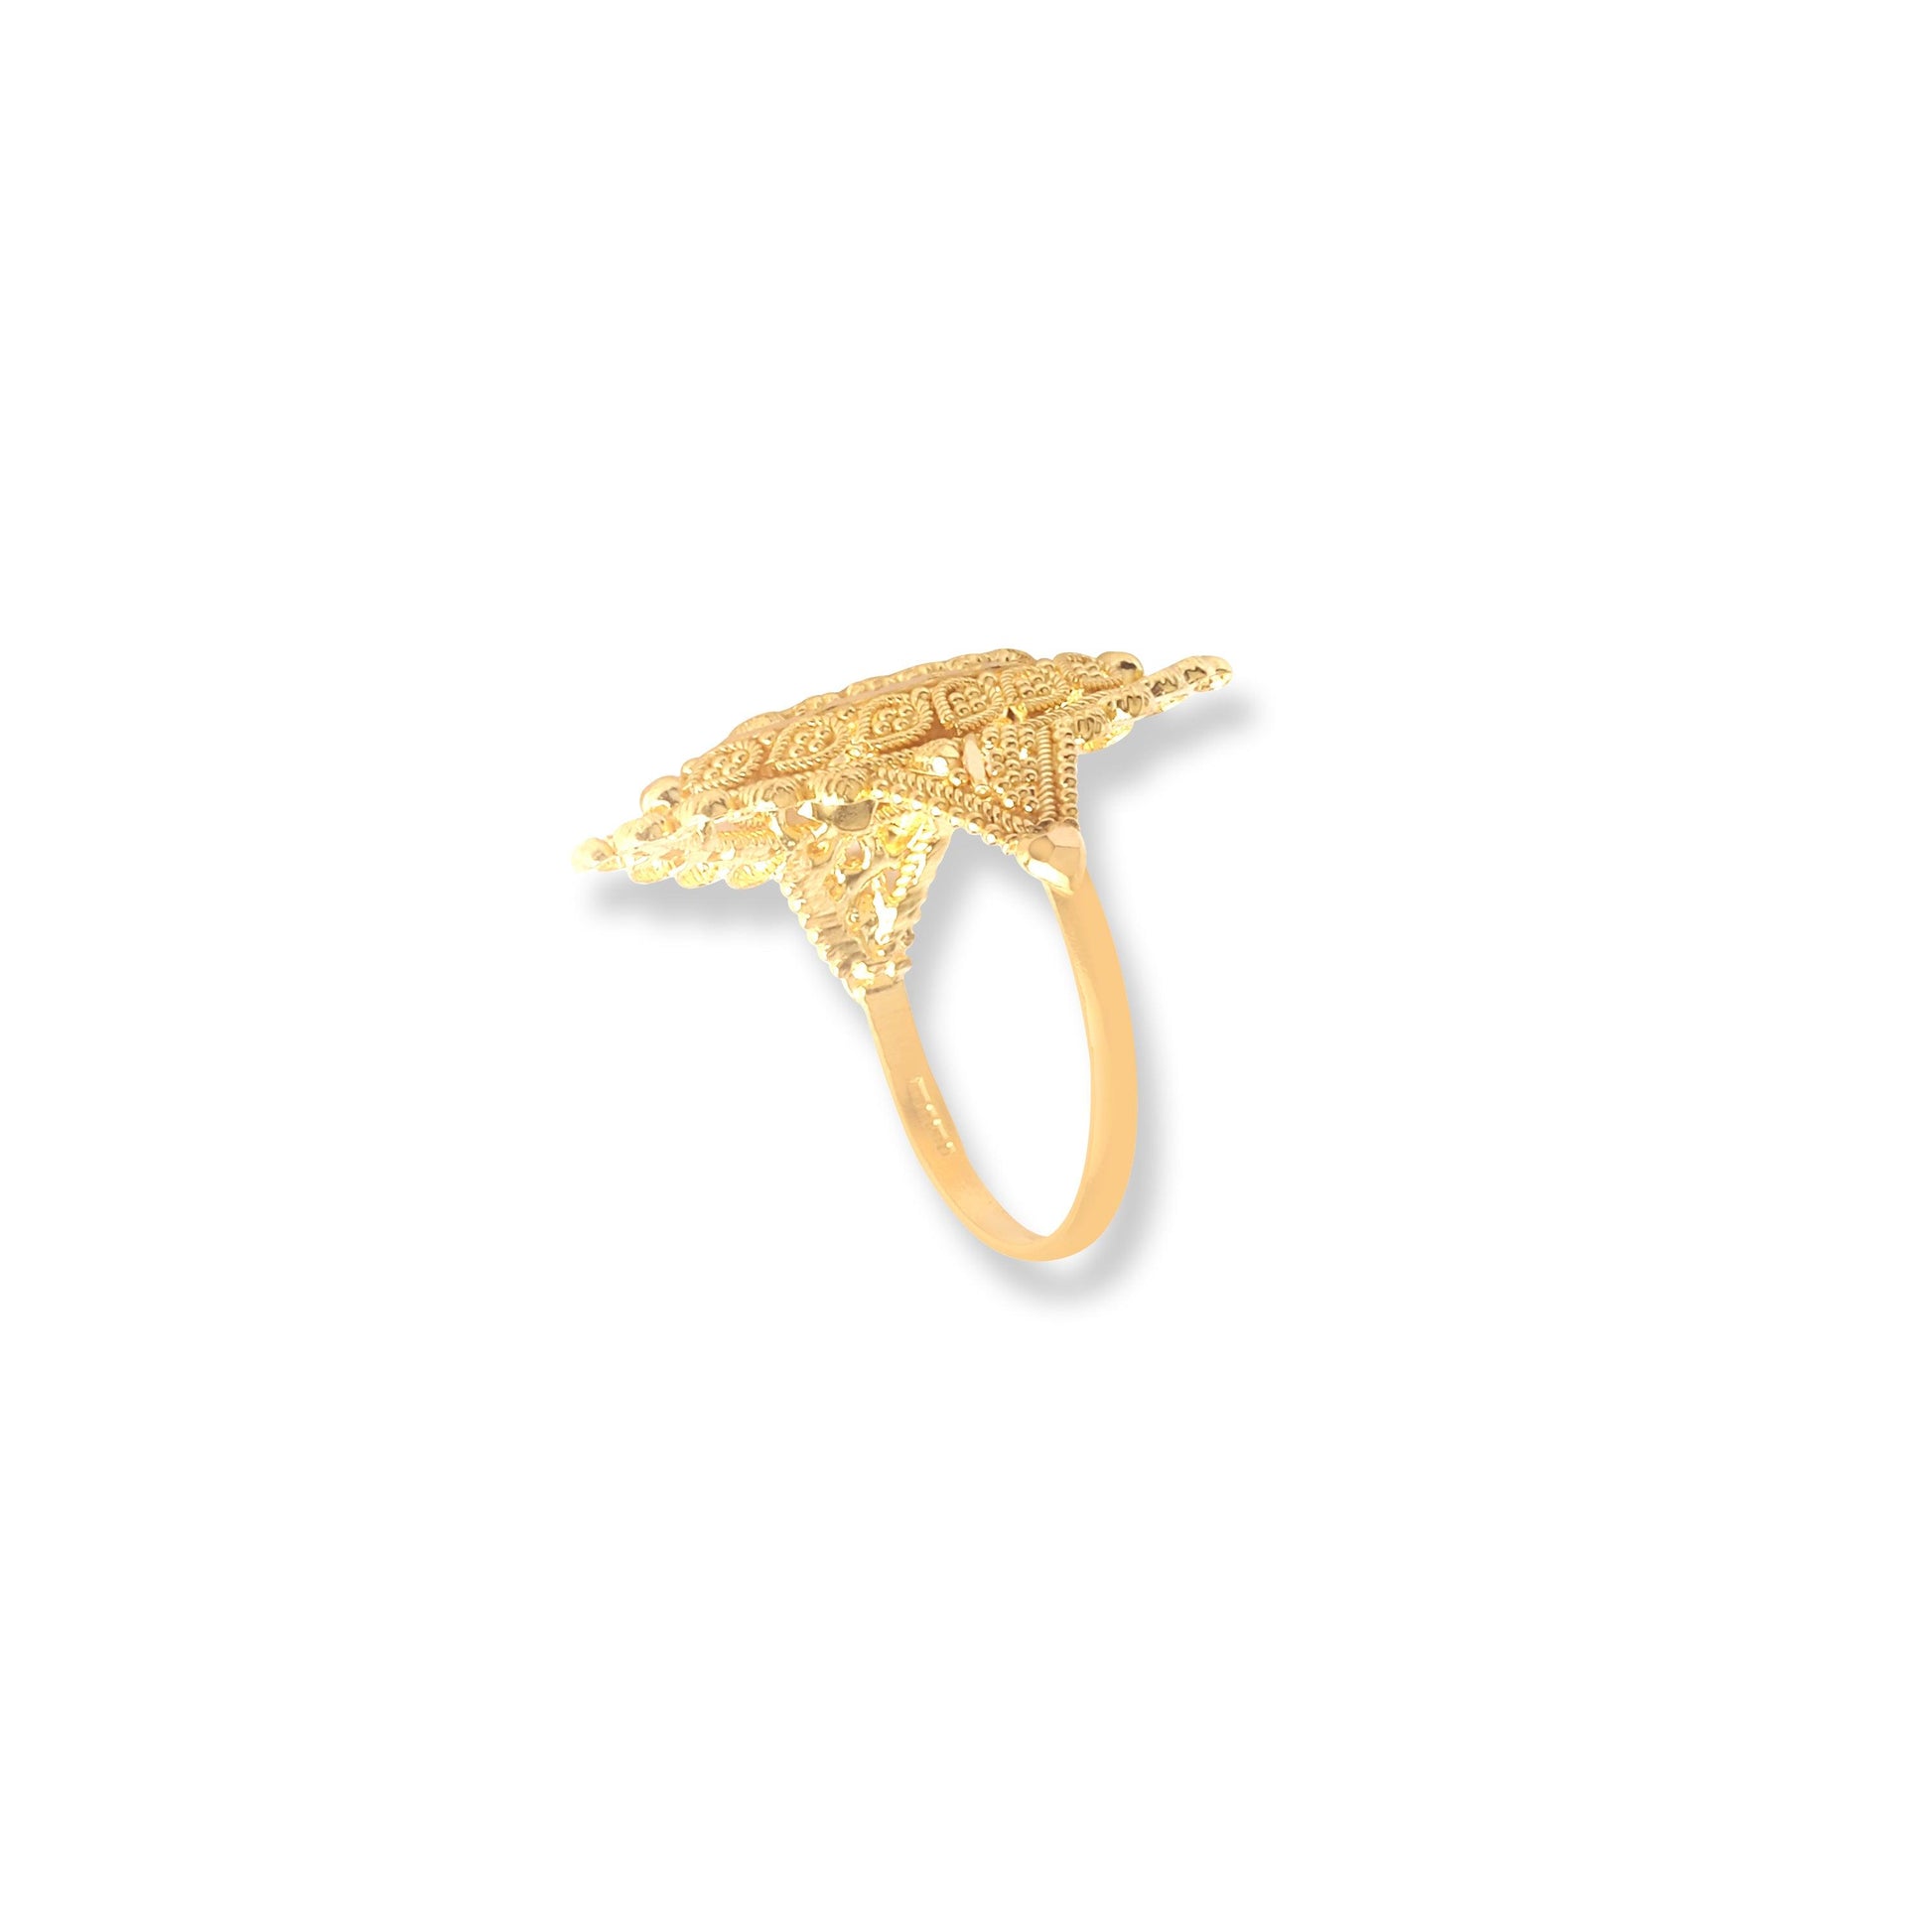 22ct Gold Filigree Ring (3.5g) LR-6569 - Minar Jewellers